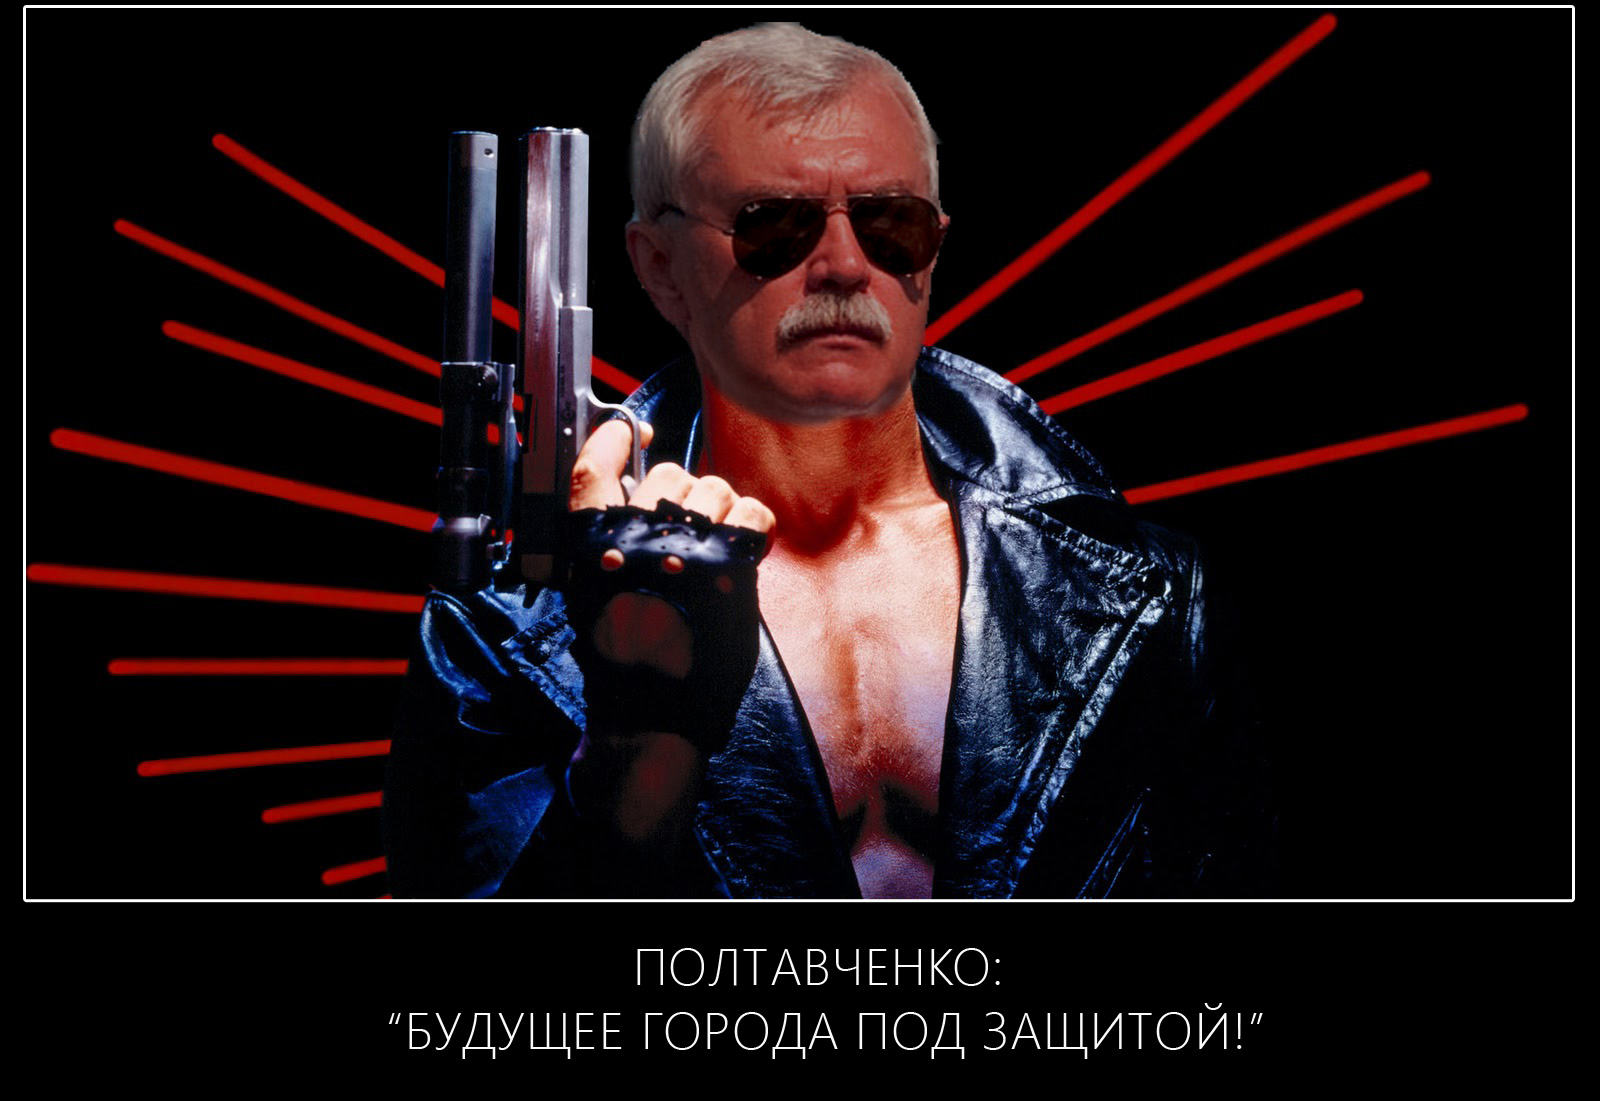 Полтавченко Георгий будующее города под защитой.